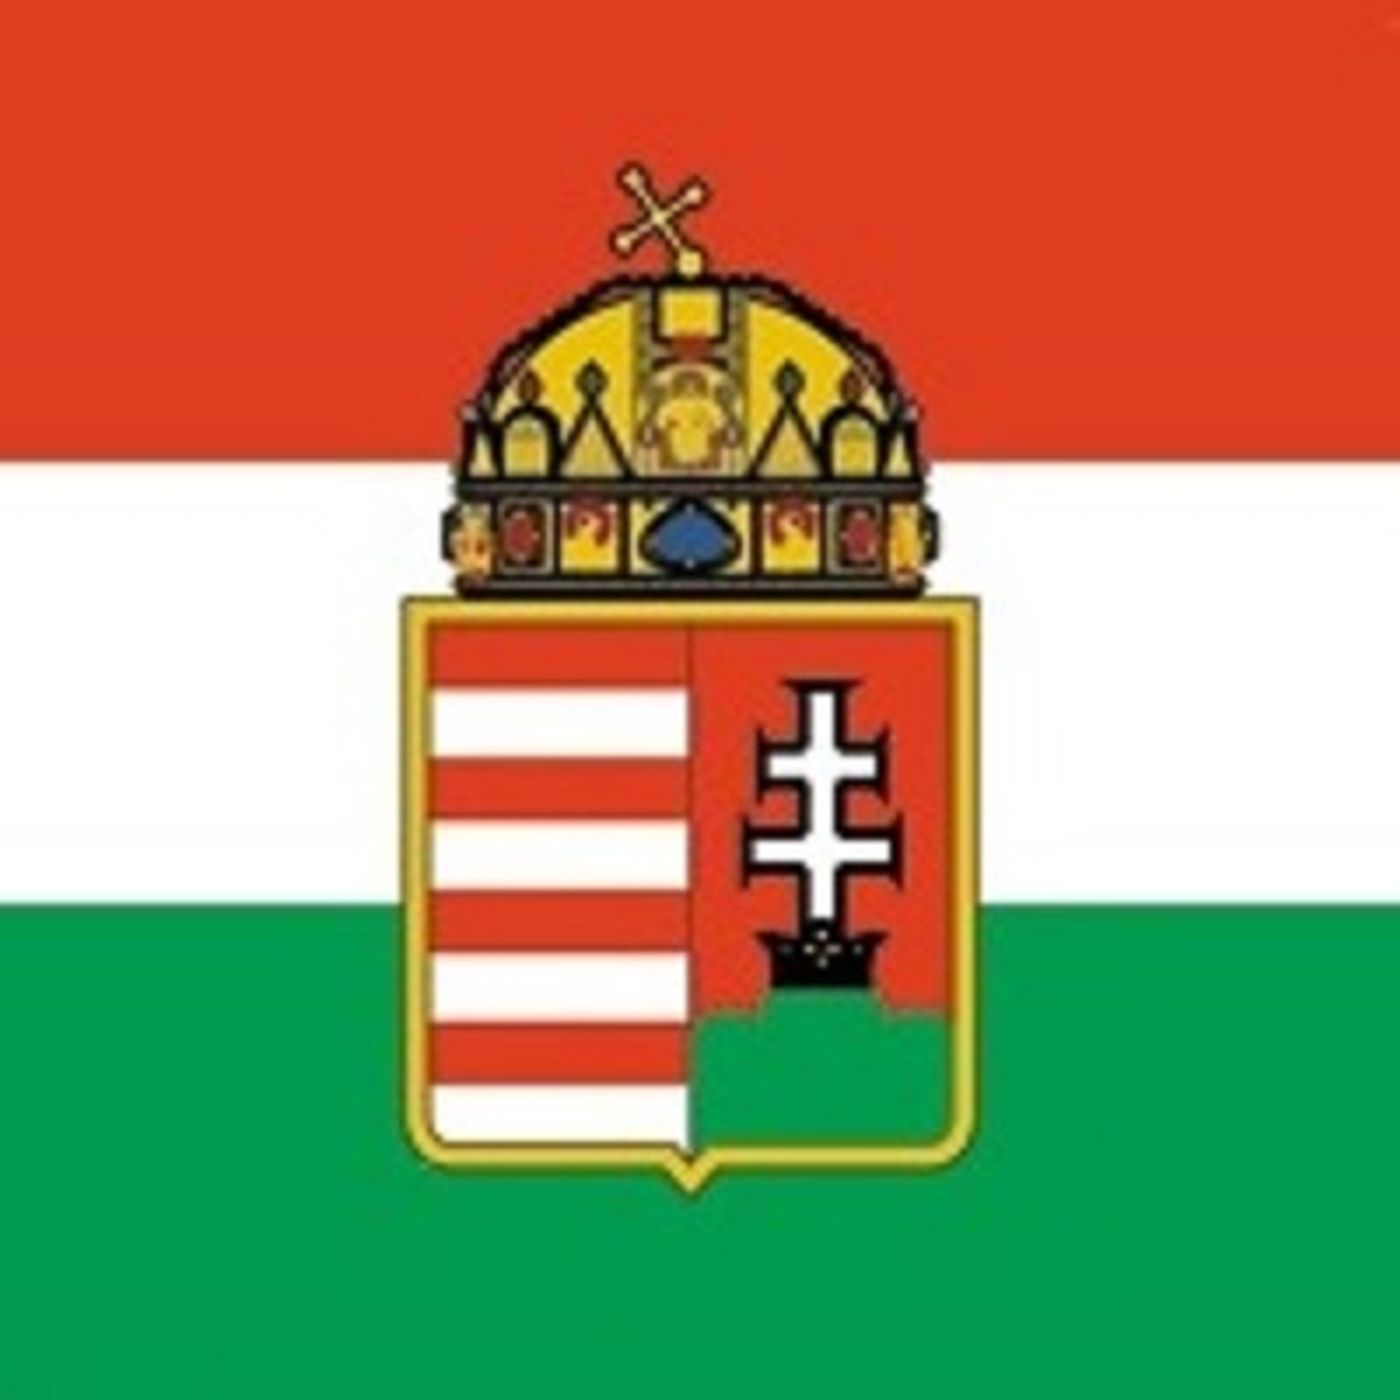 Nella costituzione il richiamo all'identità cattolica e monarchica della grande Ungheria